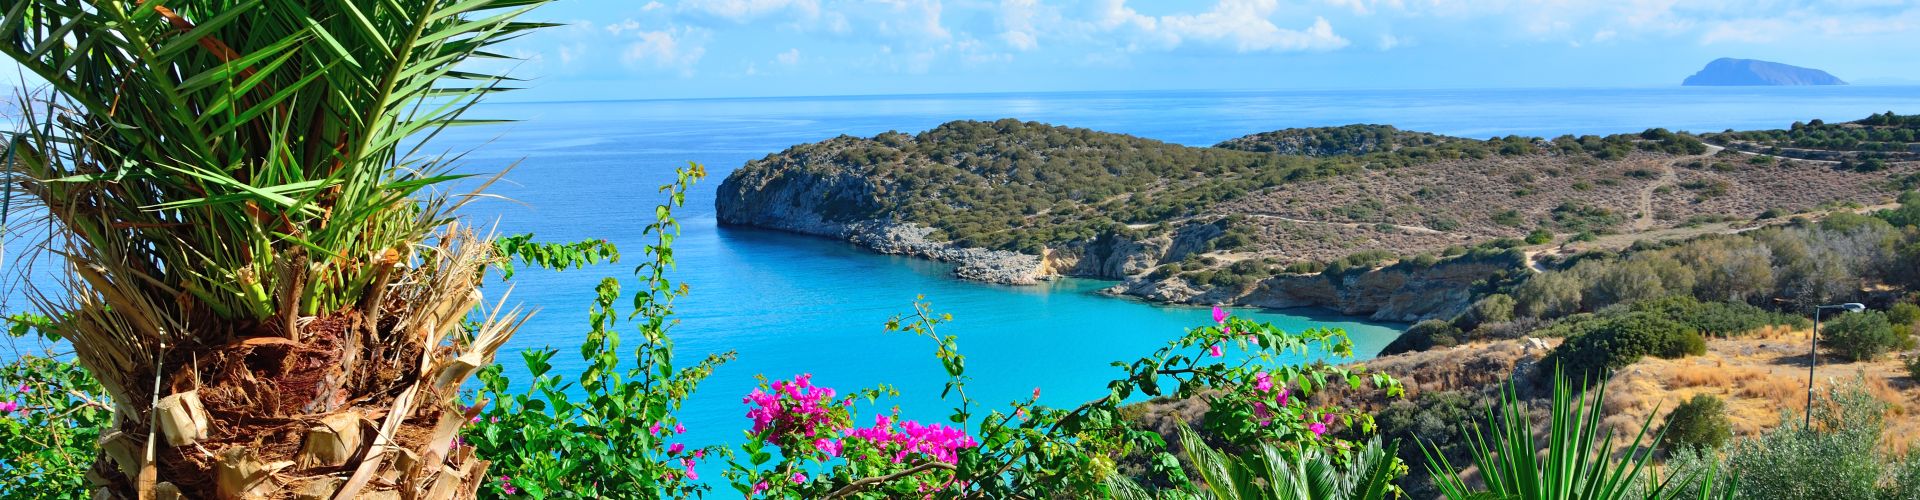 Single Urlaub in Griechenland - Traumhafte Tage unter der Sonne!